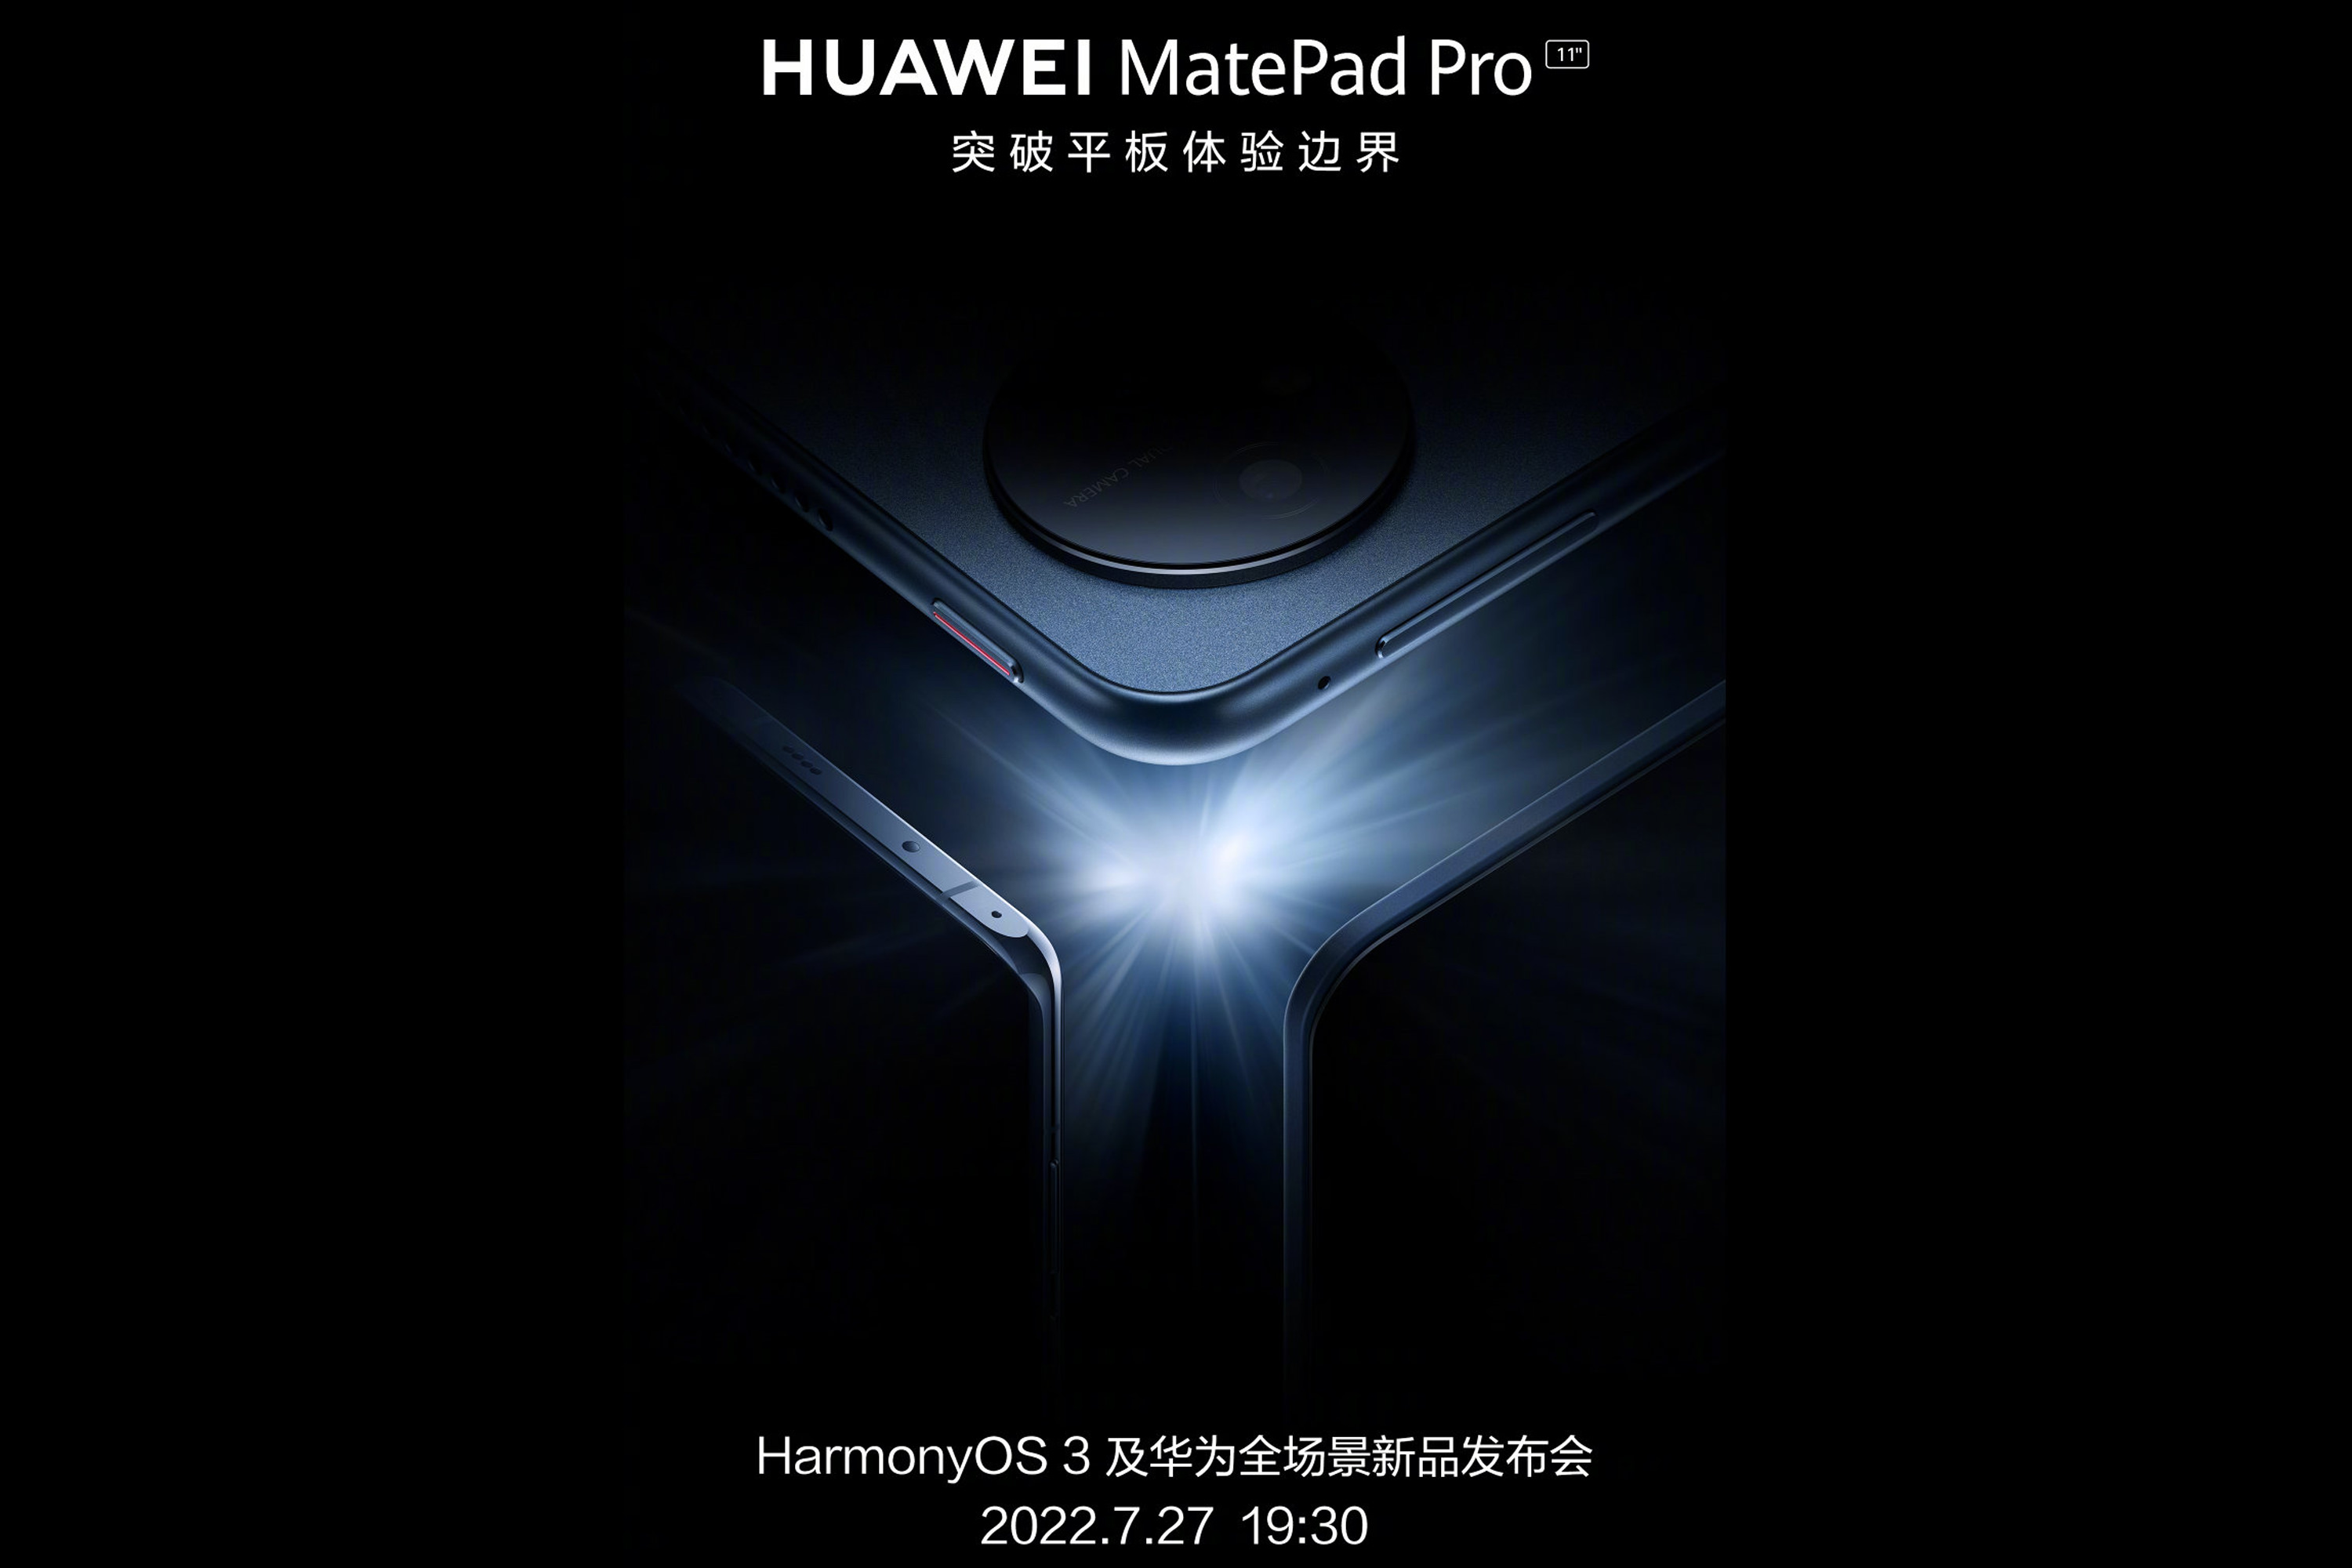 Huawei MatePad Pro 2022 poster